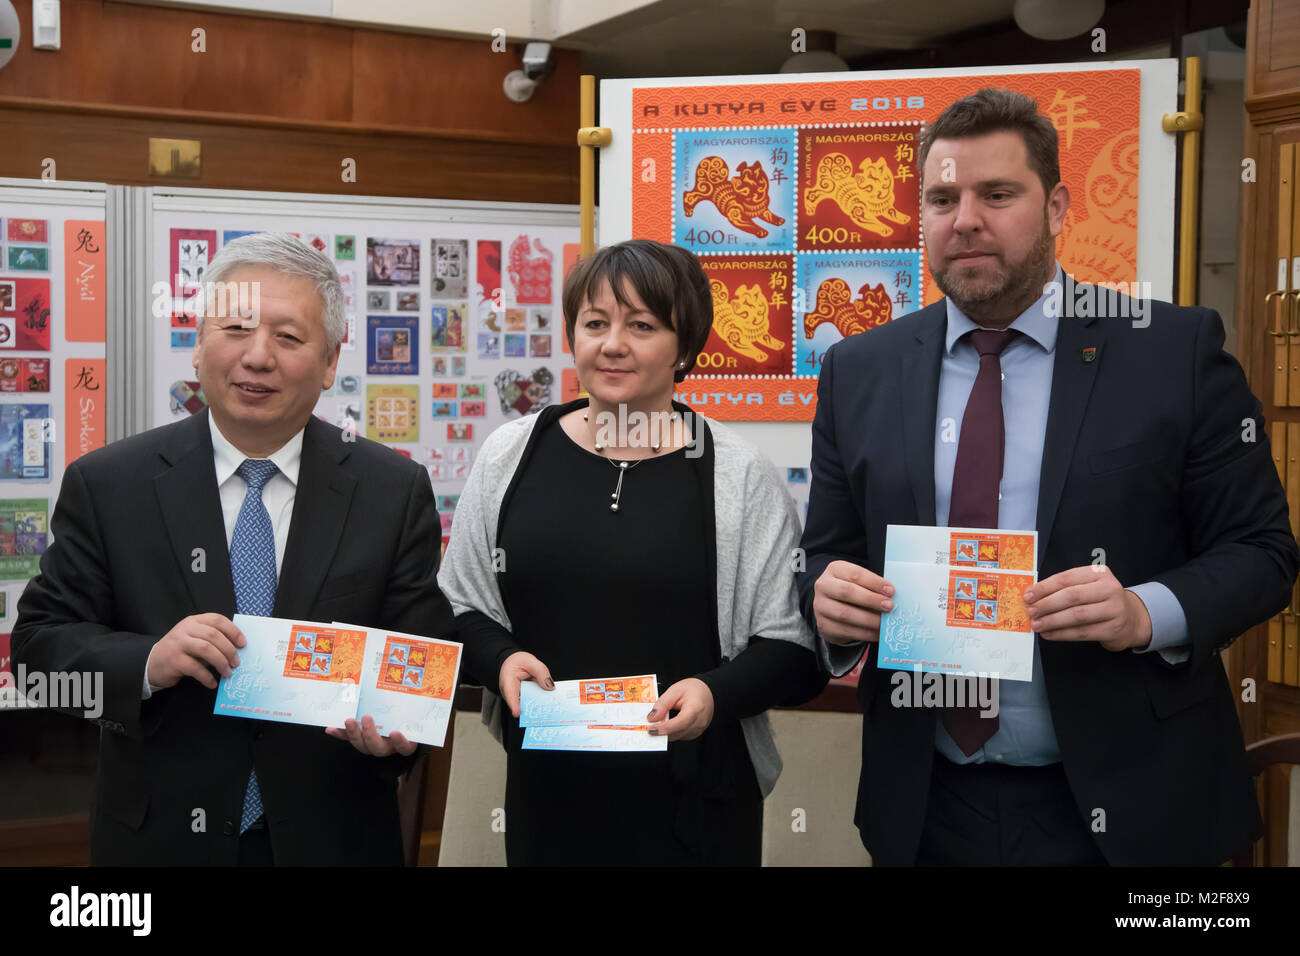 (180207) -- Budapest, 7 février 2018 (Xinhua) -- L'ambassadeur chinois en Hongrie (L) DUAN Jielong, Juhasz éditer (C), sous-secrétaire d'État à la Ministère du développement national de la Hongrie, et Zoltan Illes, président-directeur général de la poste hongroise, posent pour une photo avec le premier jour ils chandail au musée du timbre hongrois à Budapest, Hongrie le 6 février 2018. Le zodiac timbre émis par la poste hongroise en l'honneur de l'année chinoise du chien a été présenté au public dans le musée du timbre Hongrois ici mardi. C'est la cinquième édition d'un timbre Hongrois commemor Banque D'Images